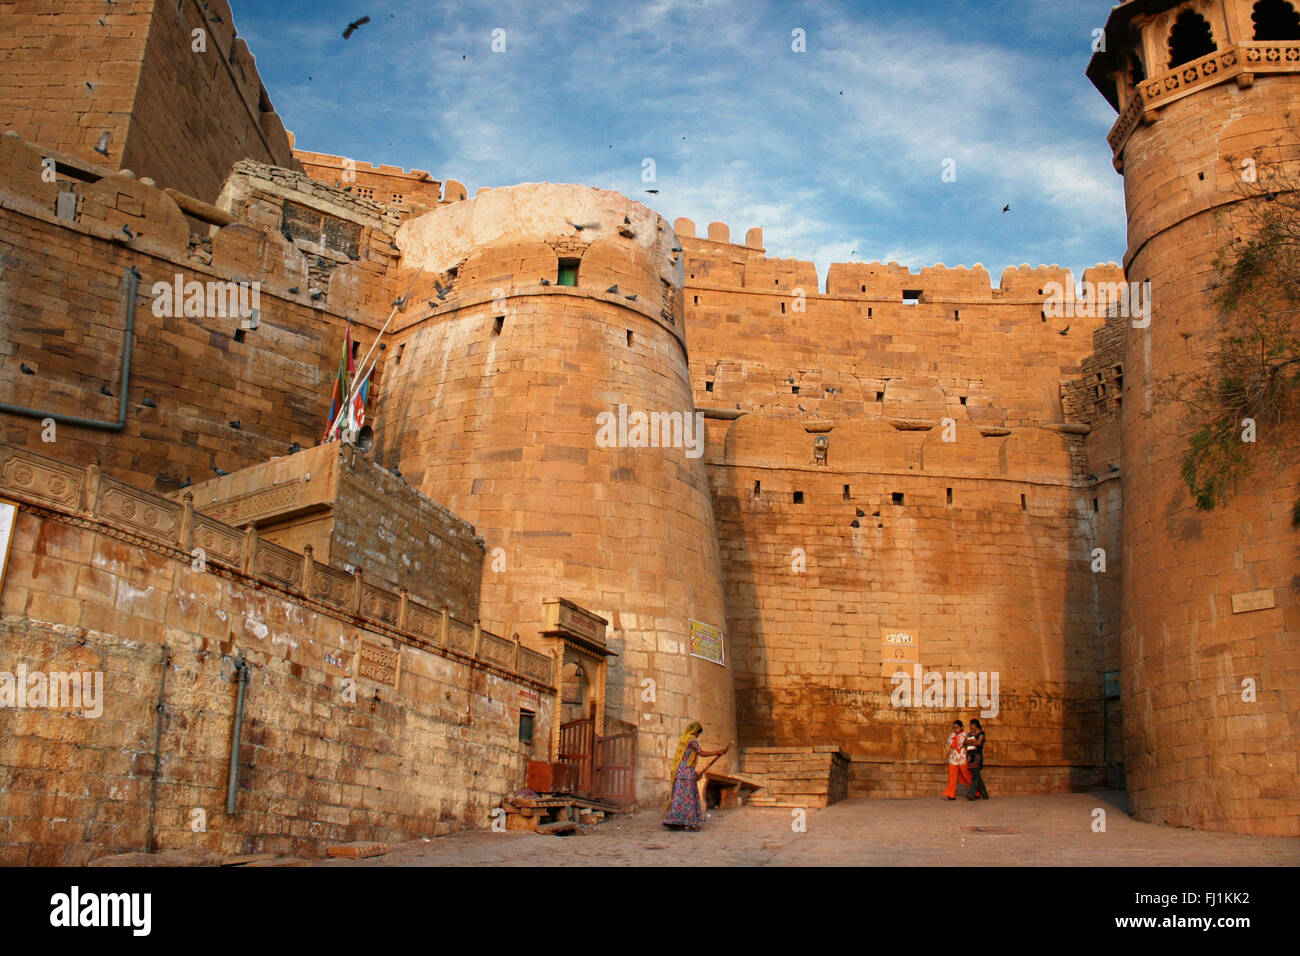 La entrada y la muralla de la fortaleza de Jaisalmer, Rajasthan, India Foto de stock